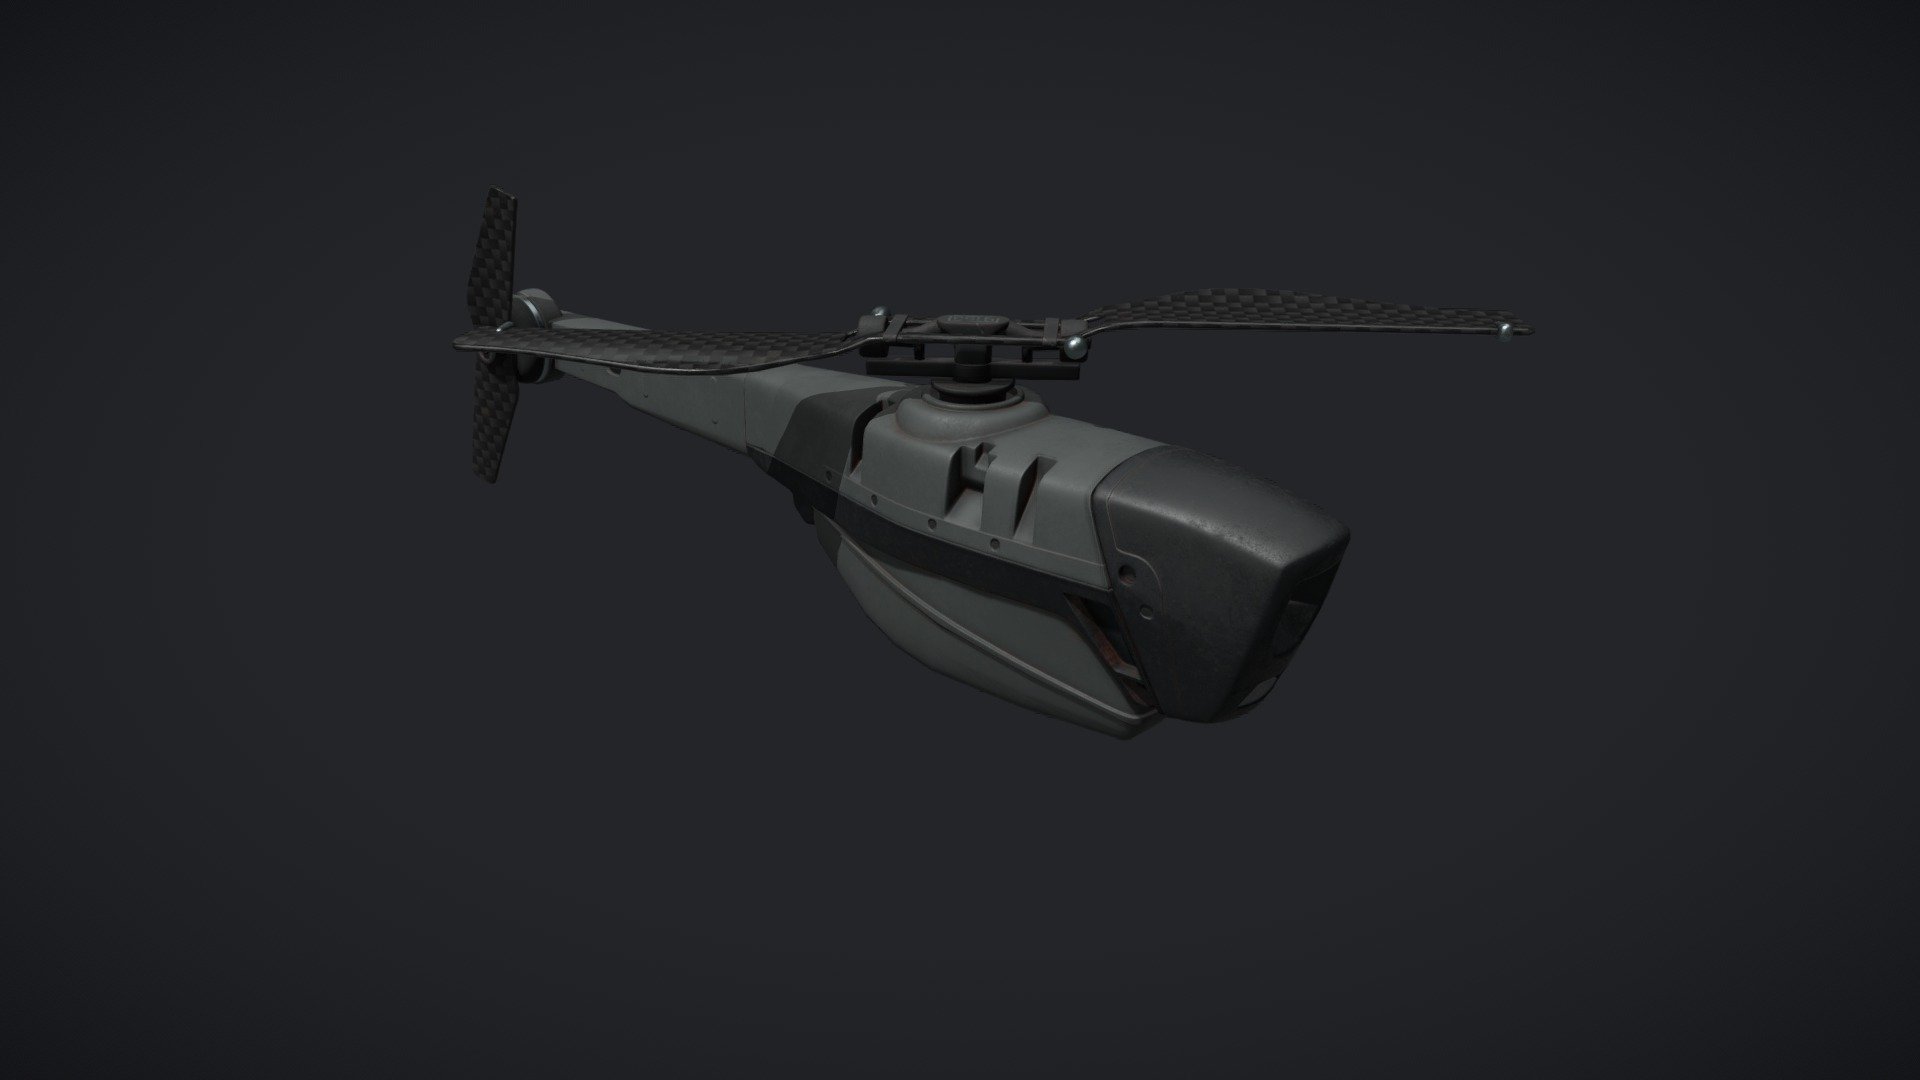 Final GAP assignment 

BlackHornet drone - Black Hornet - 3D model by Zulianello Luca (@Erendal) 3d model